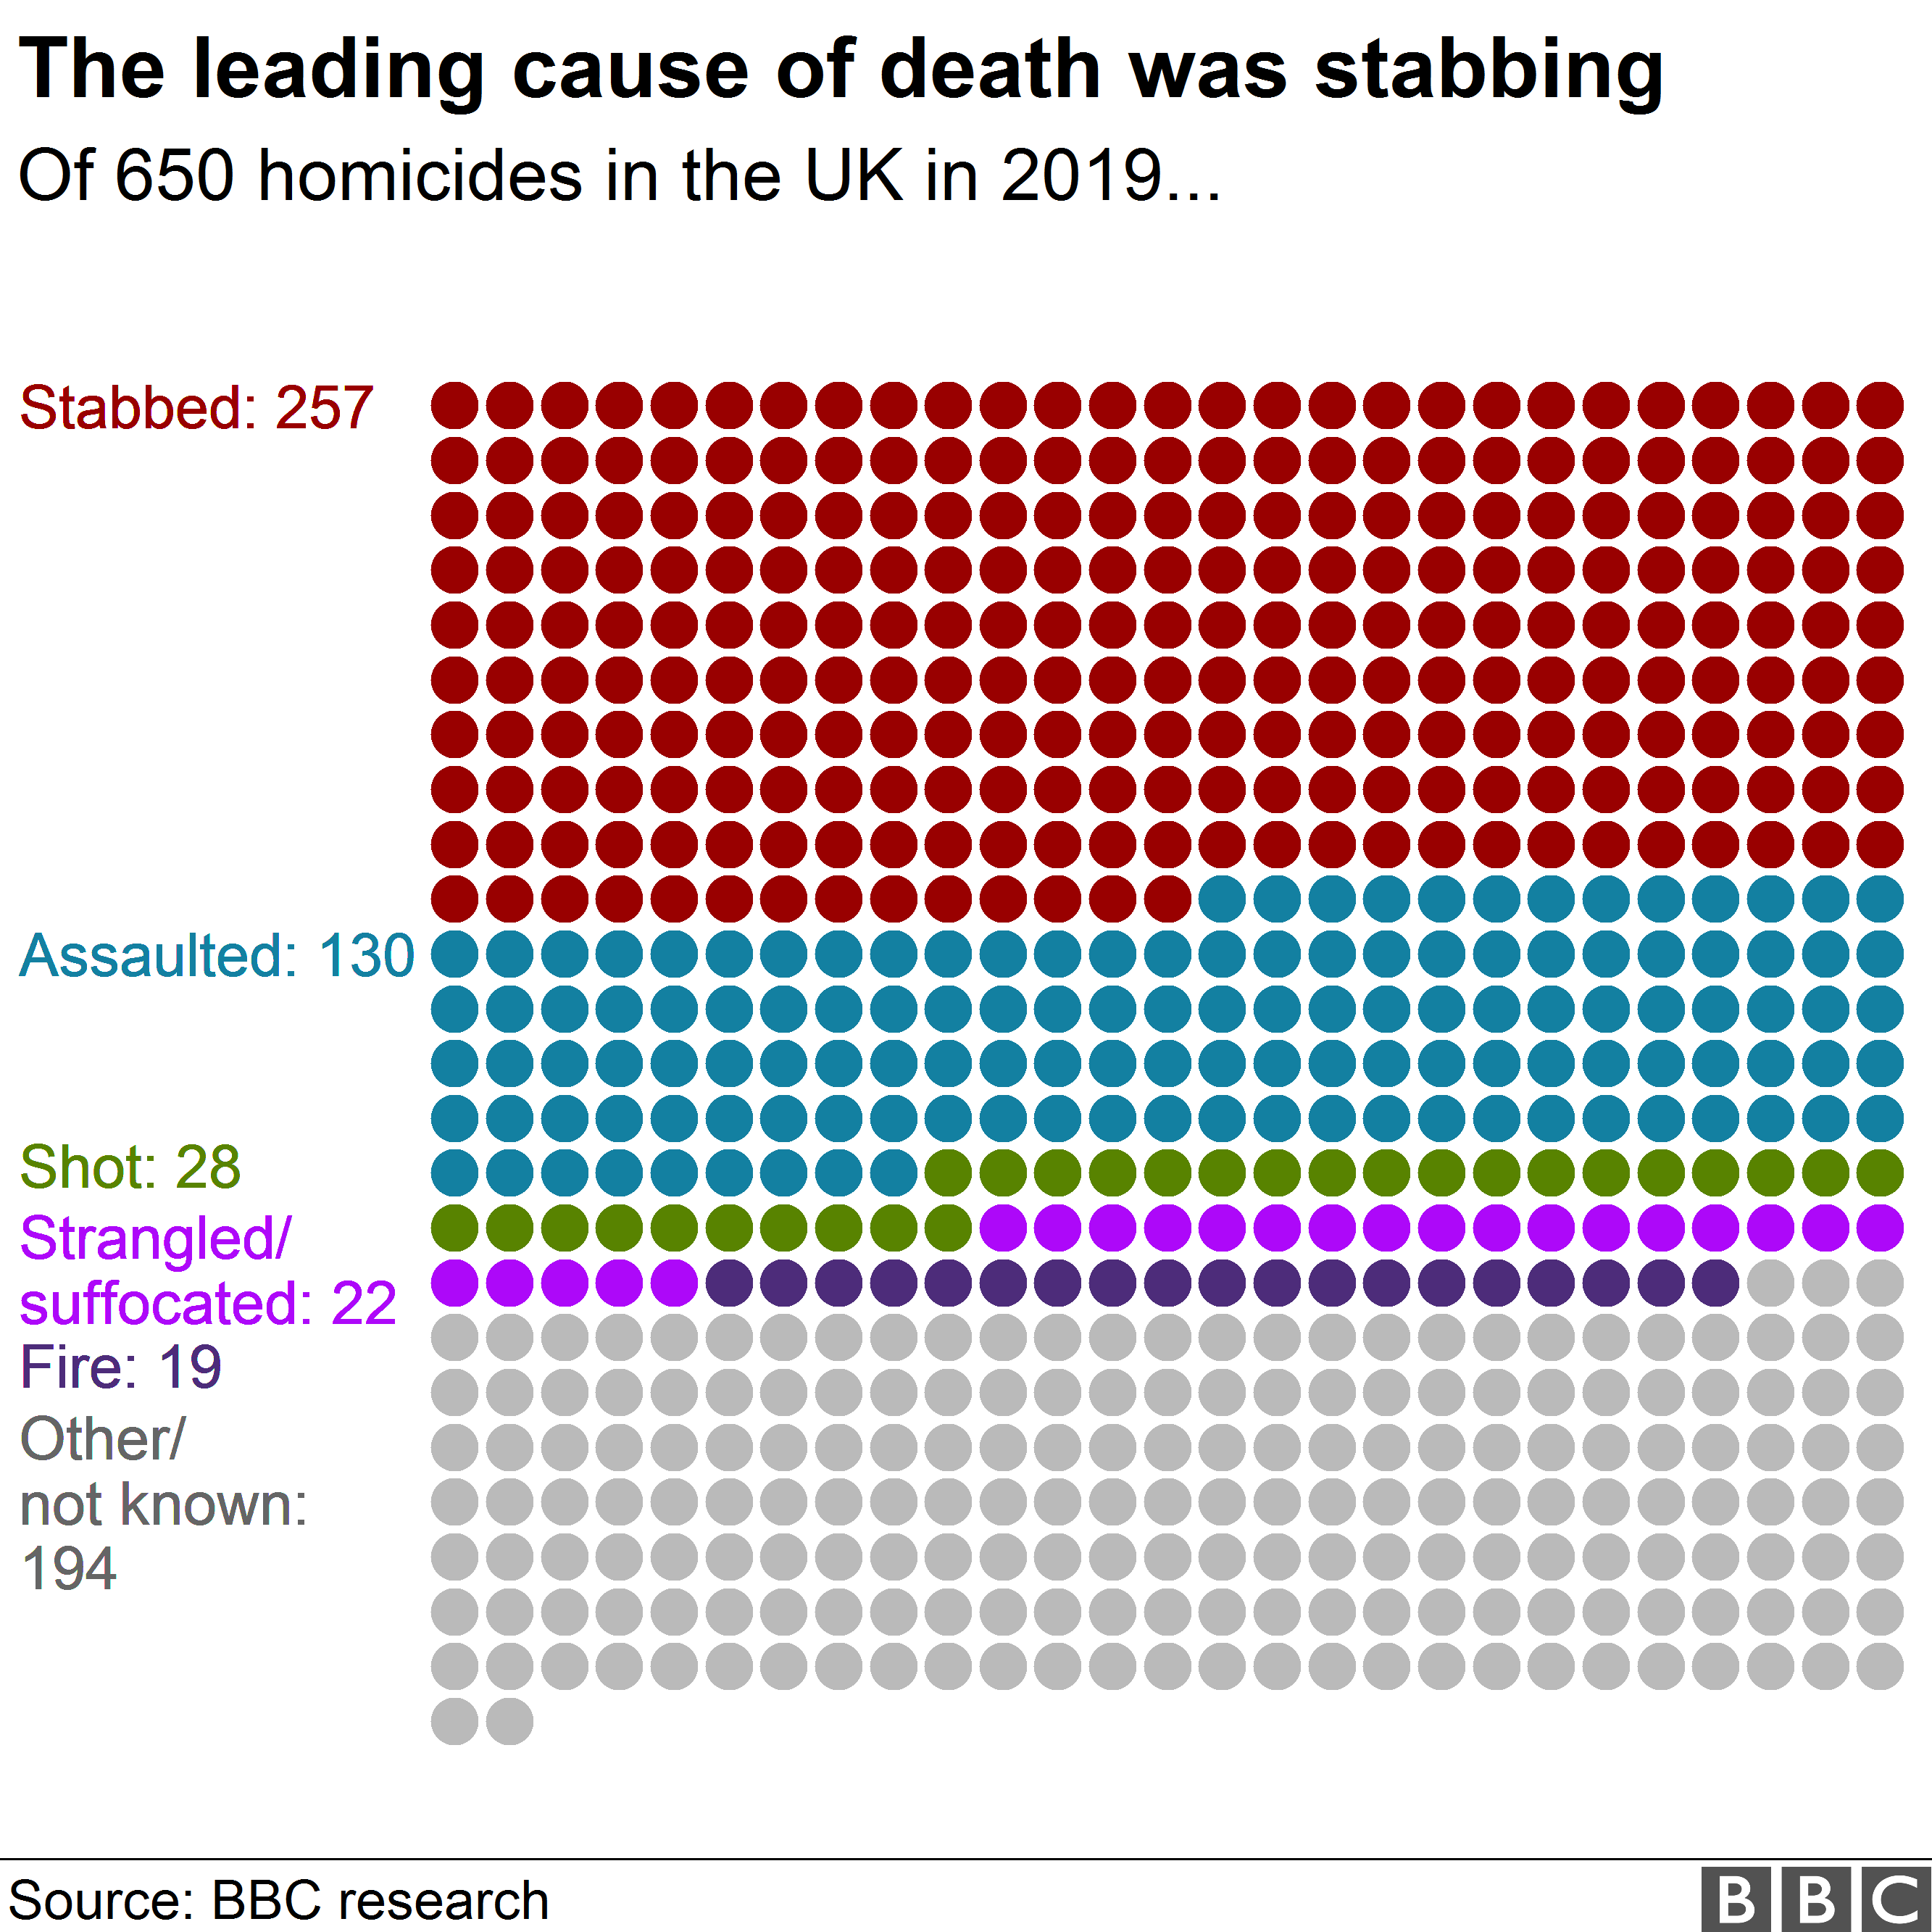 Диаграмма, показывающая жертвы убийства, представленные точками, с цветовой кодировкой по способу убийства